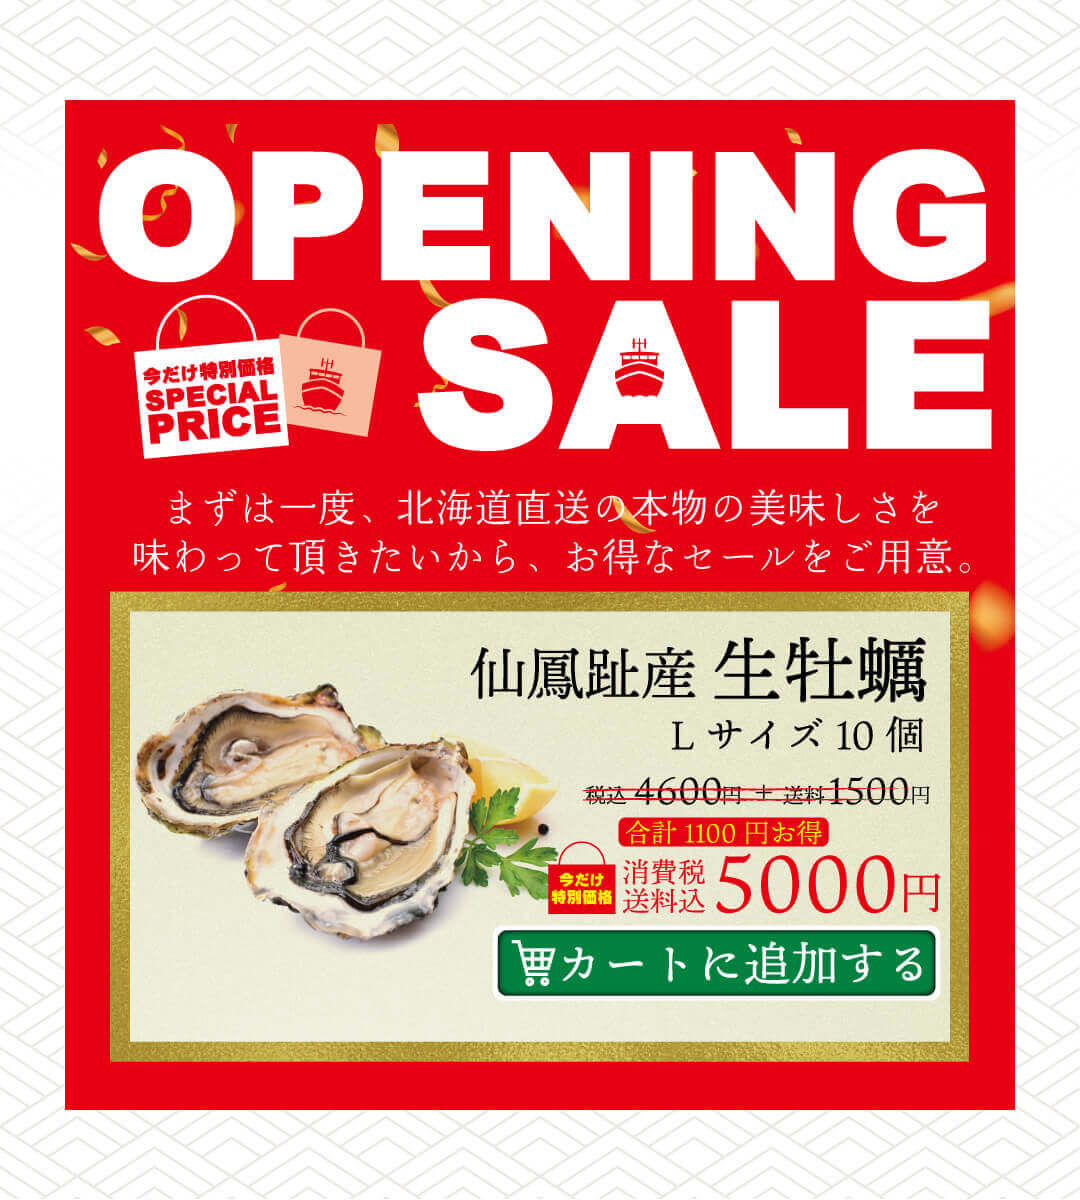 北海道海産物直販サイト『海活丸』-オープニングキャンペーン